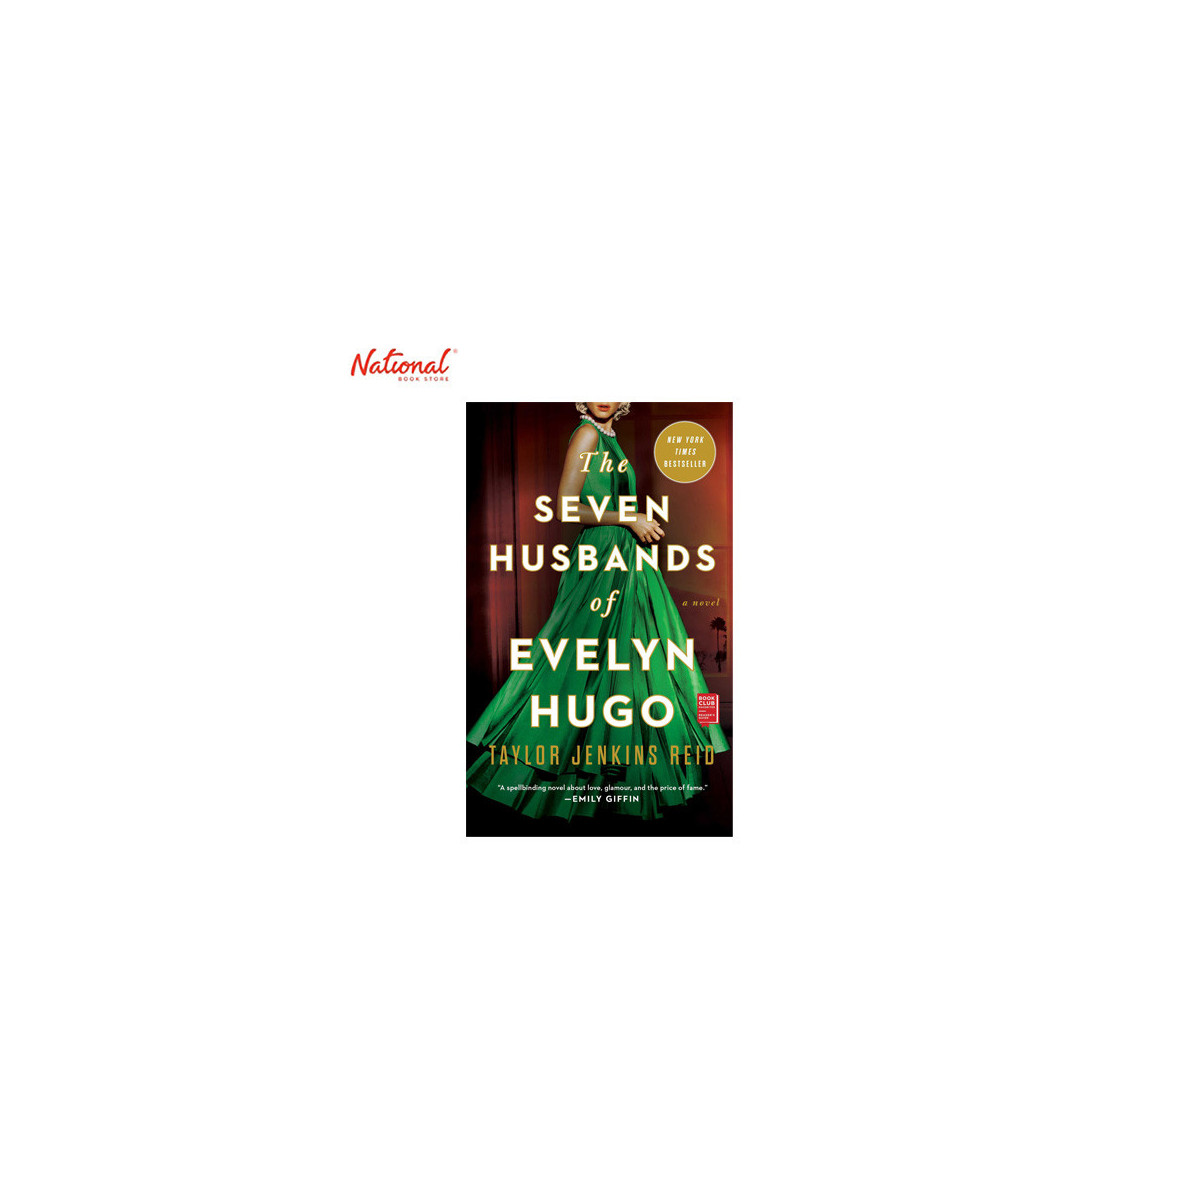 The Seven Husbands of Evelyn Hugo Trade Paperback by Taylor Jenkins Reid